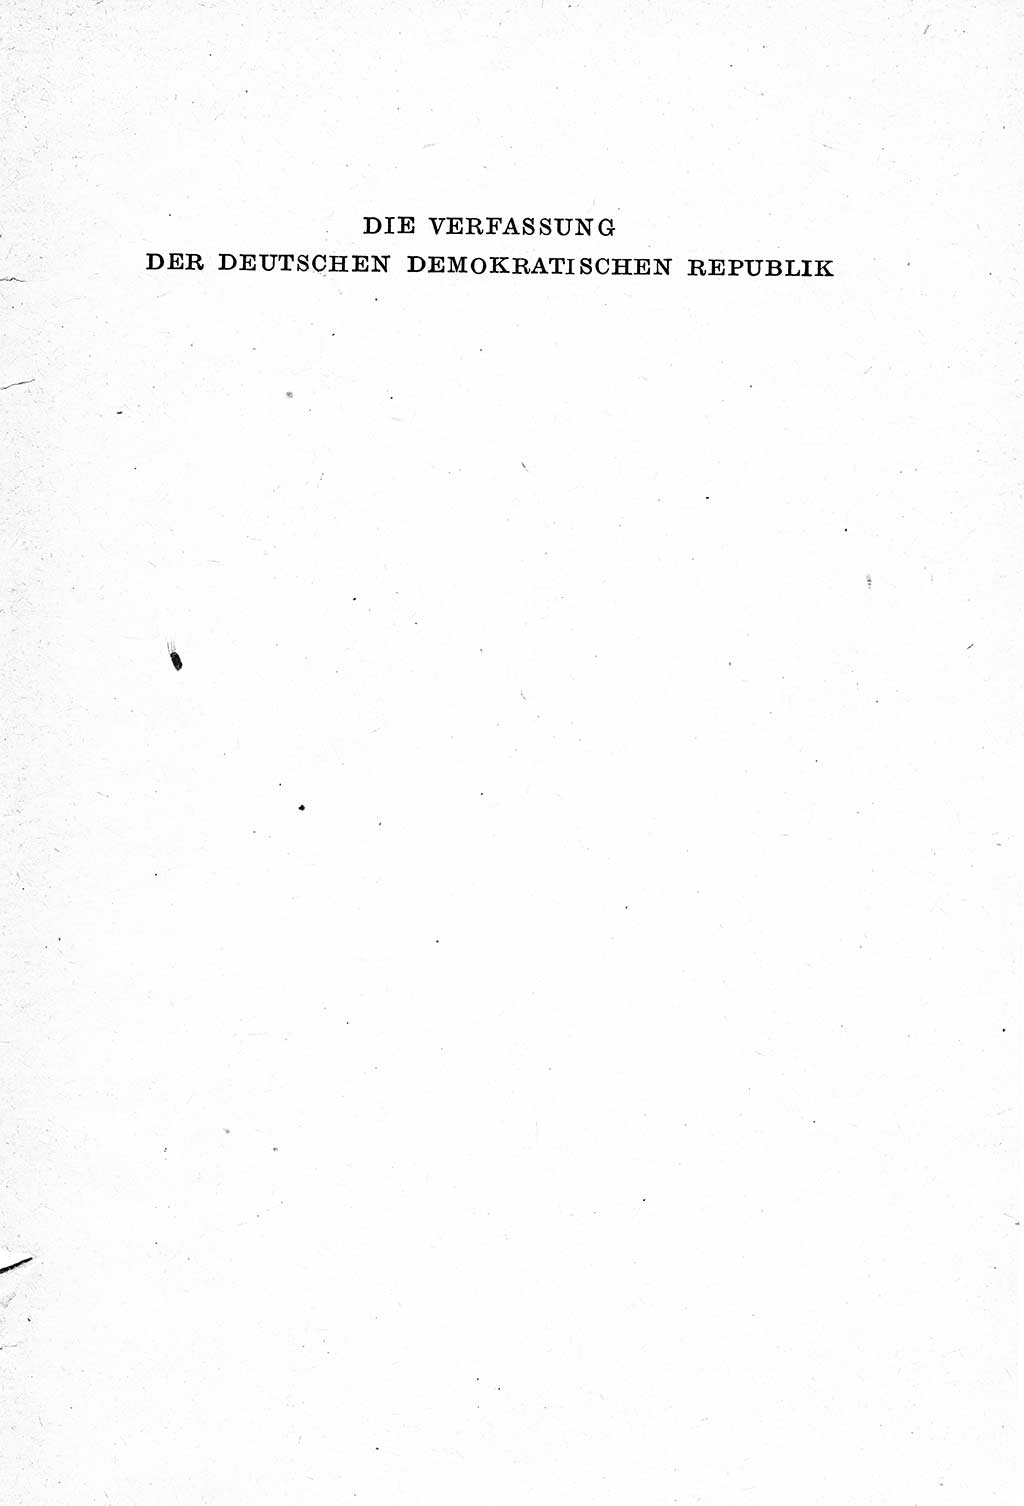 Verfassung der Deutschen Demokratischen Republik (DDR) mit einer Einleitung von Karl Steinhoff 1949, Seite 1 (Verf. DDR Einl. K. S. 1949, S. 1)